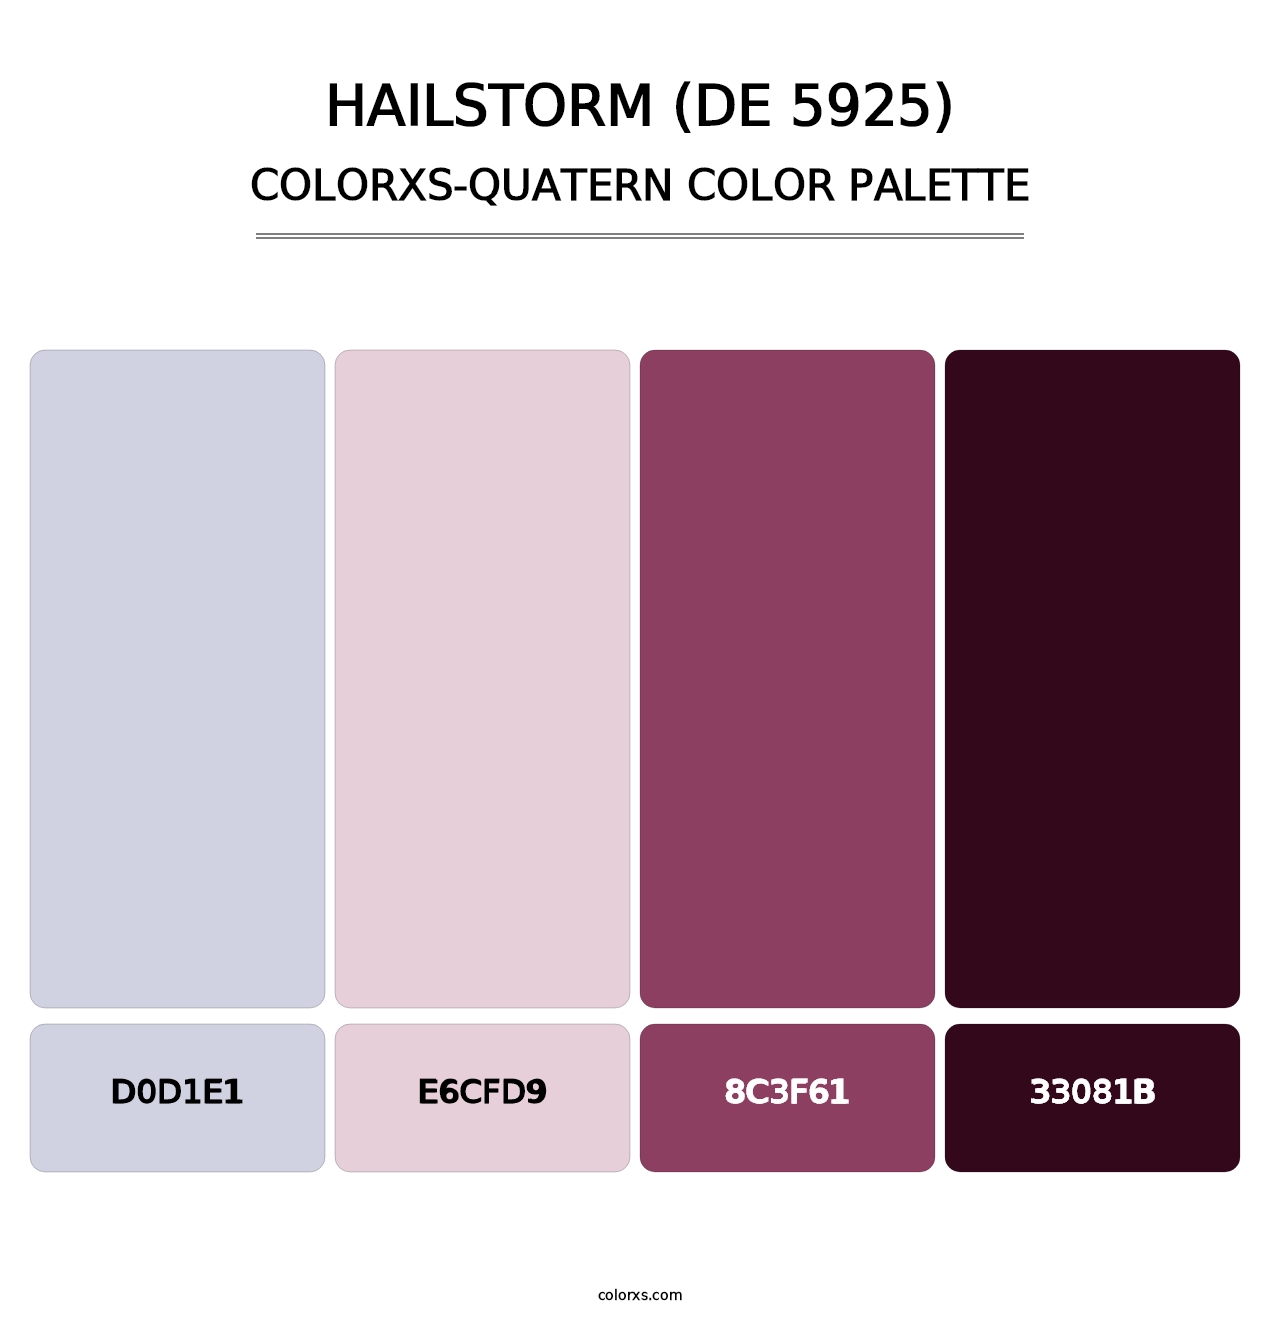 Hailstorm (DE 5925) - Colorxs Quatern Palette